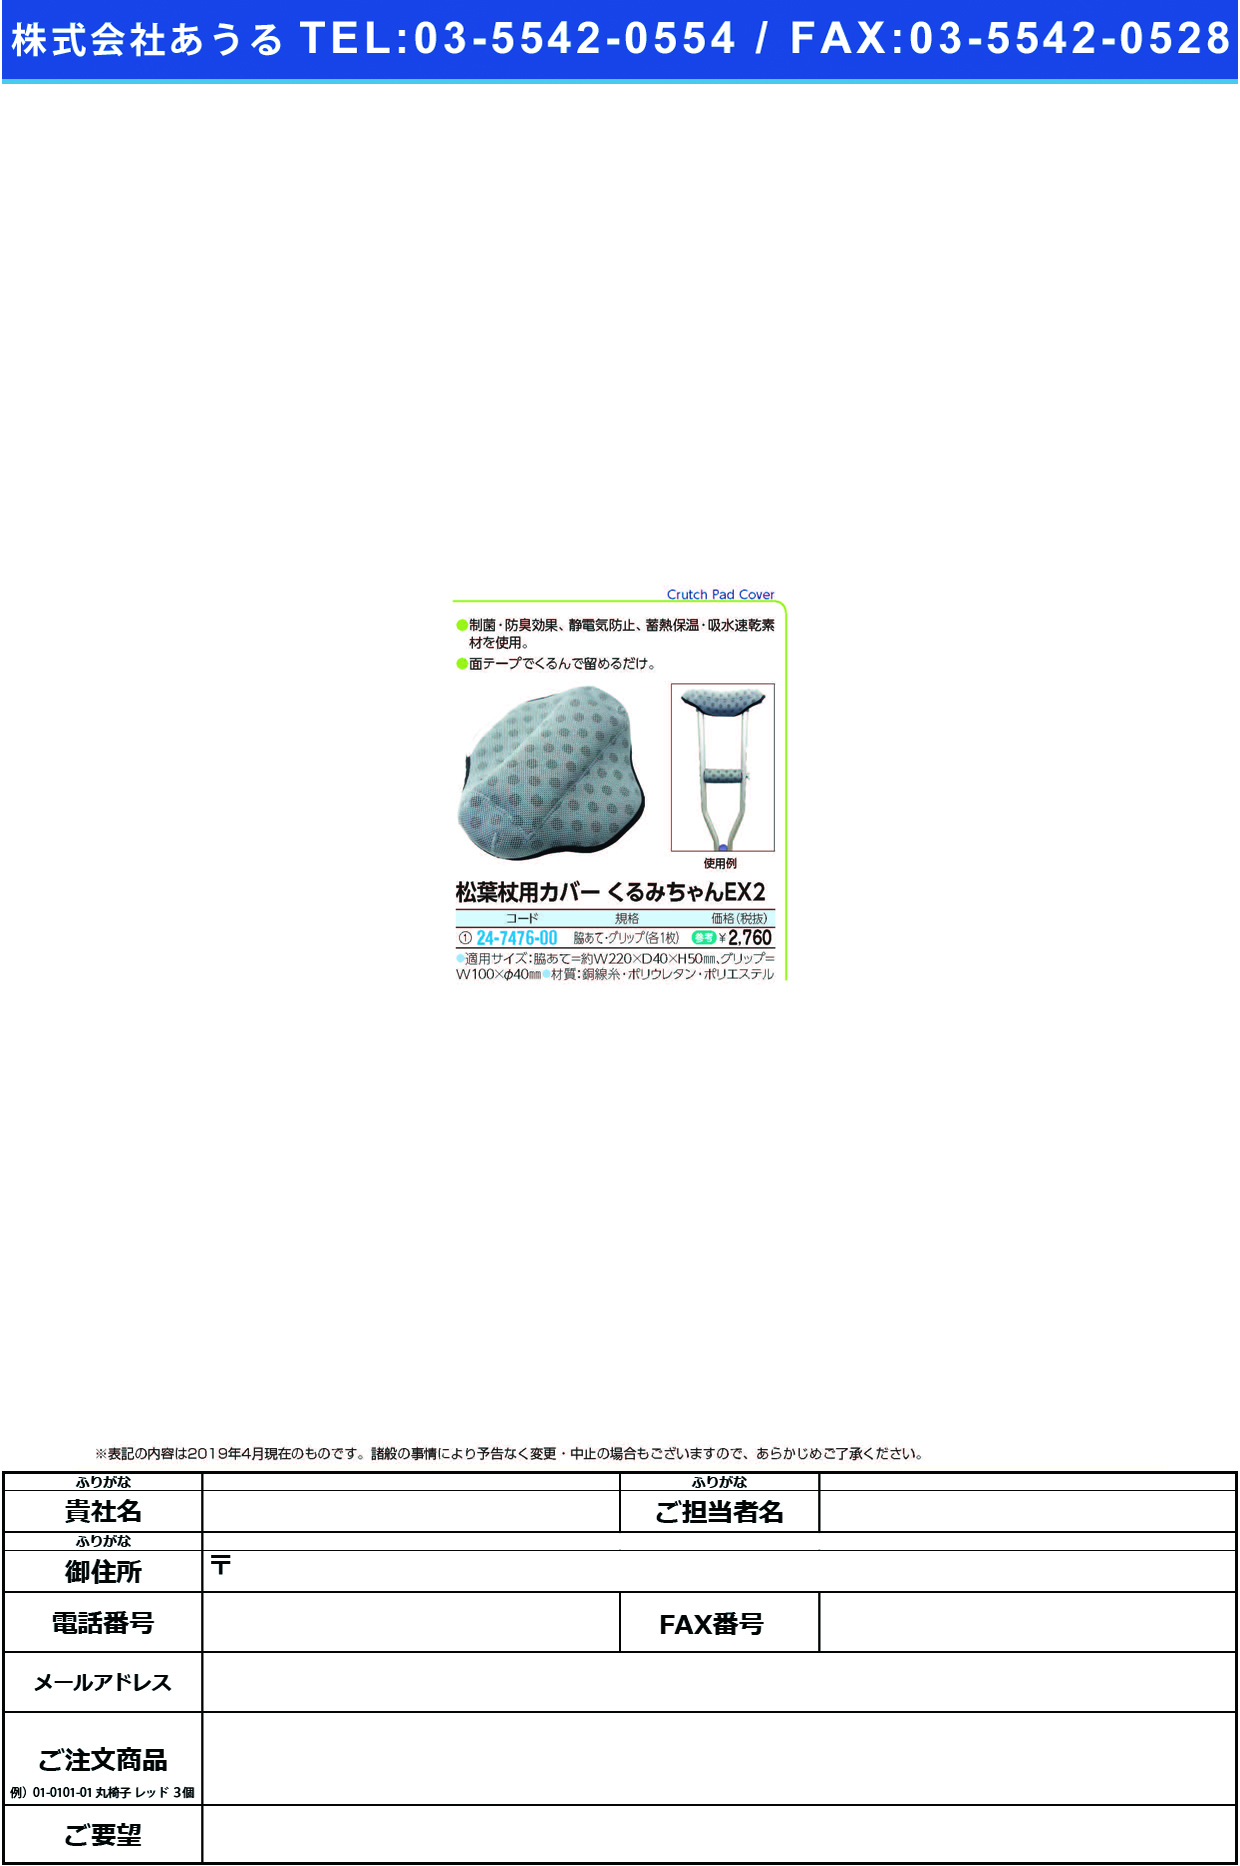 (24-7476-00)松葉杖用カバー　くるみちゃんＥＸ２ﾜｷｱﾃ･ｸﾞﾘｯﾌﾟｶｸ1ﾏｲｲﾘ ﾏﾂﾊﾞﾂﾞｴﾖｳｶﾊﾞｰｸﾙﾐﾁｬﾝ(吉縁)【1袋単位】【2019年カタログ商品】